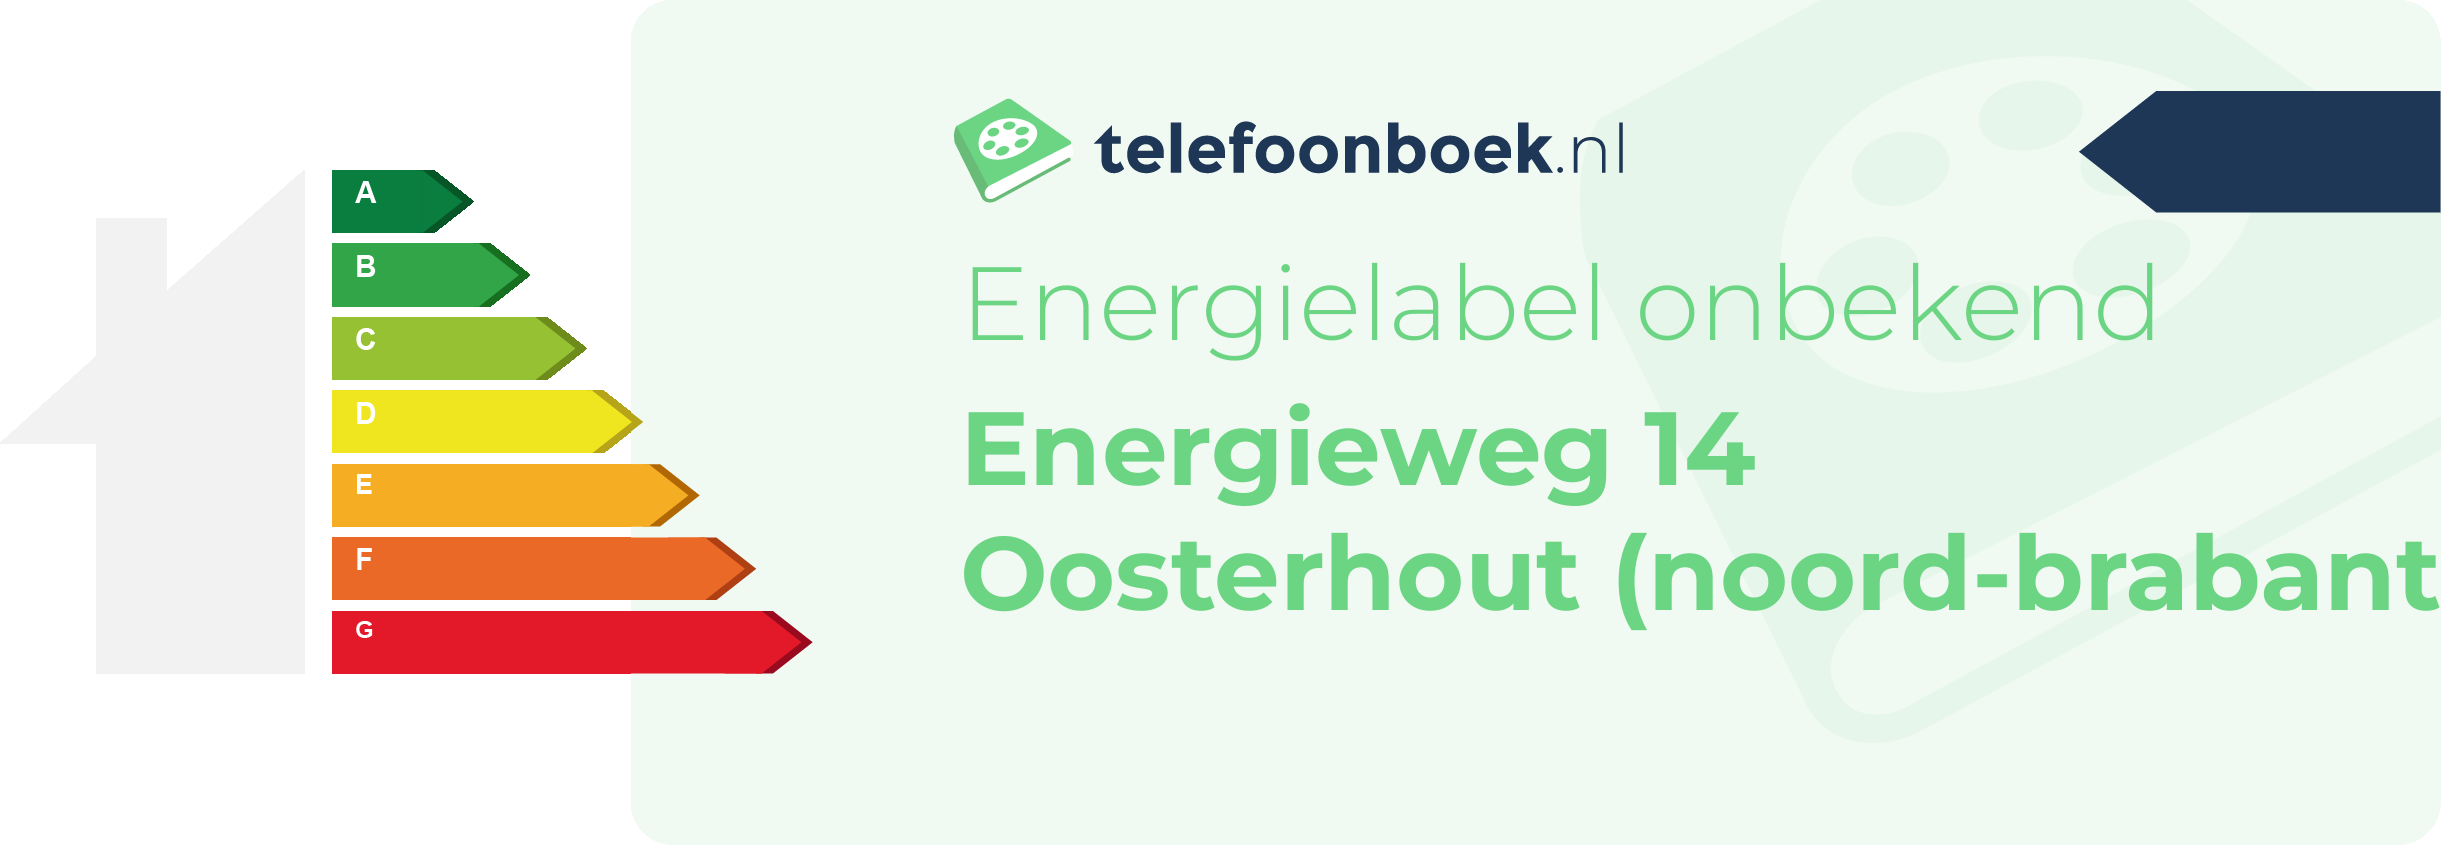 Energielabel Energieweg 14 Oosterhout (Noord-Brabant)